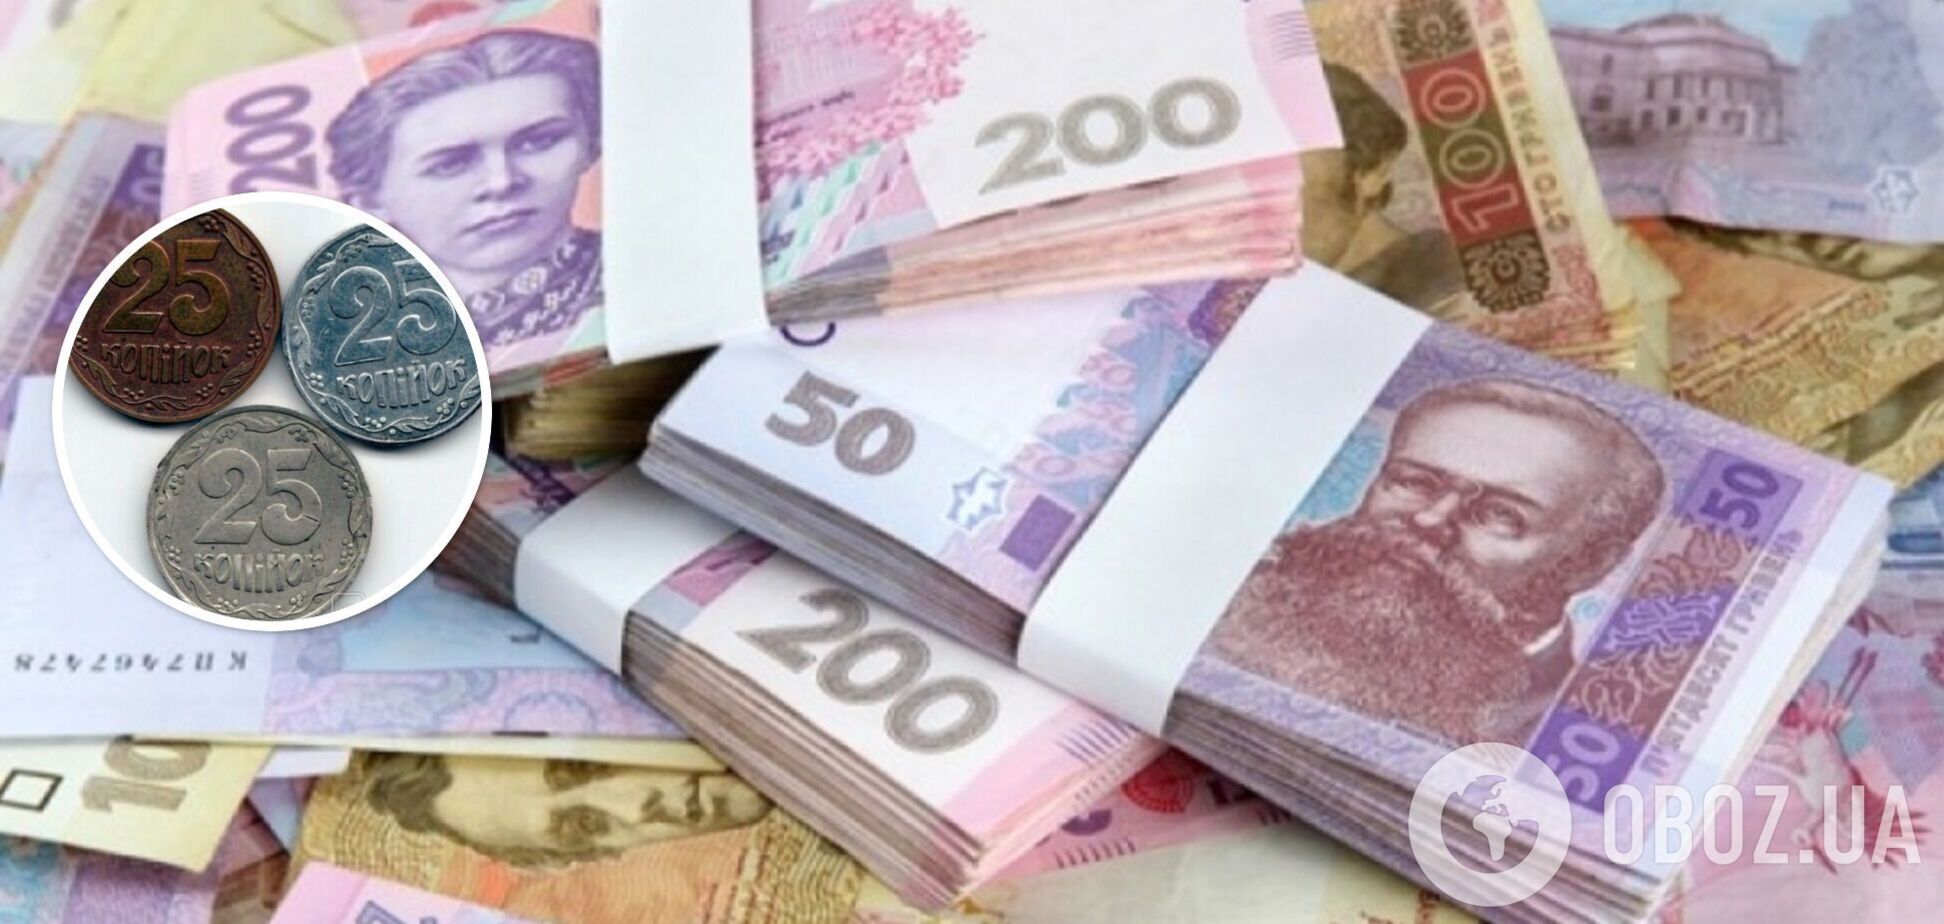 В Украине три монеты по 25 копеек продают за 200 тысяч